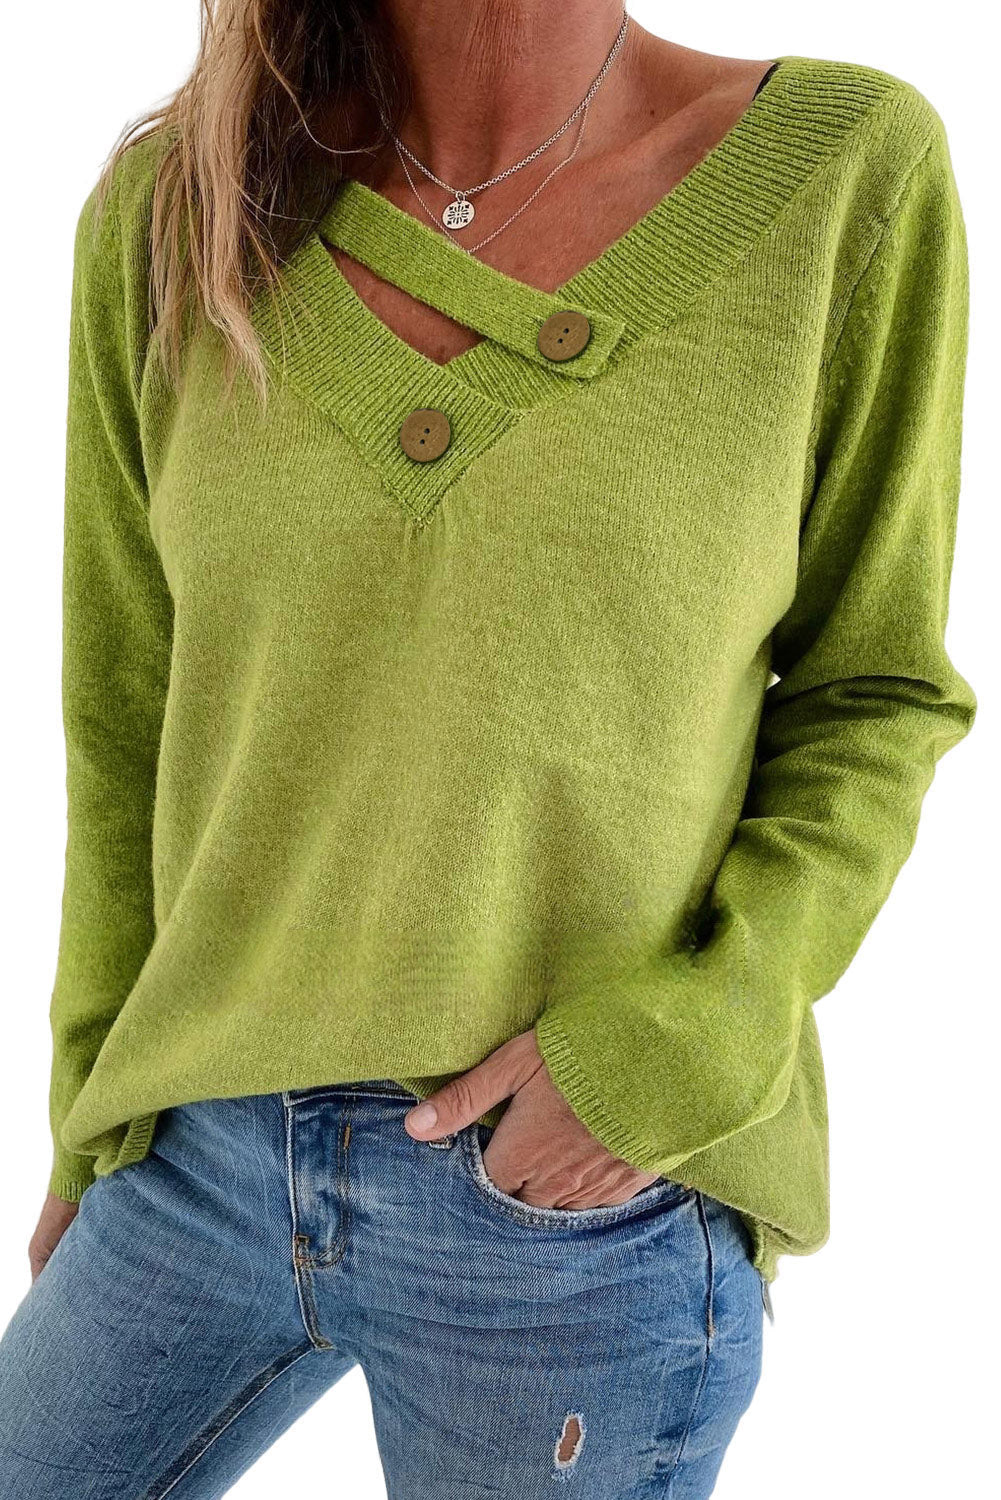 Grüner, einfarbiger Pullover mit Knopfleiste und V-Ausschnitt